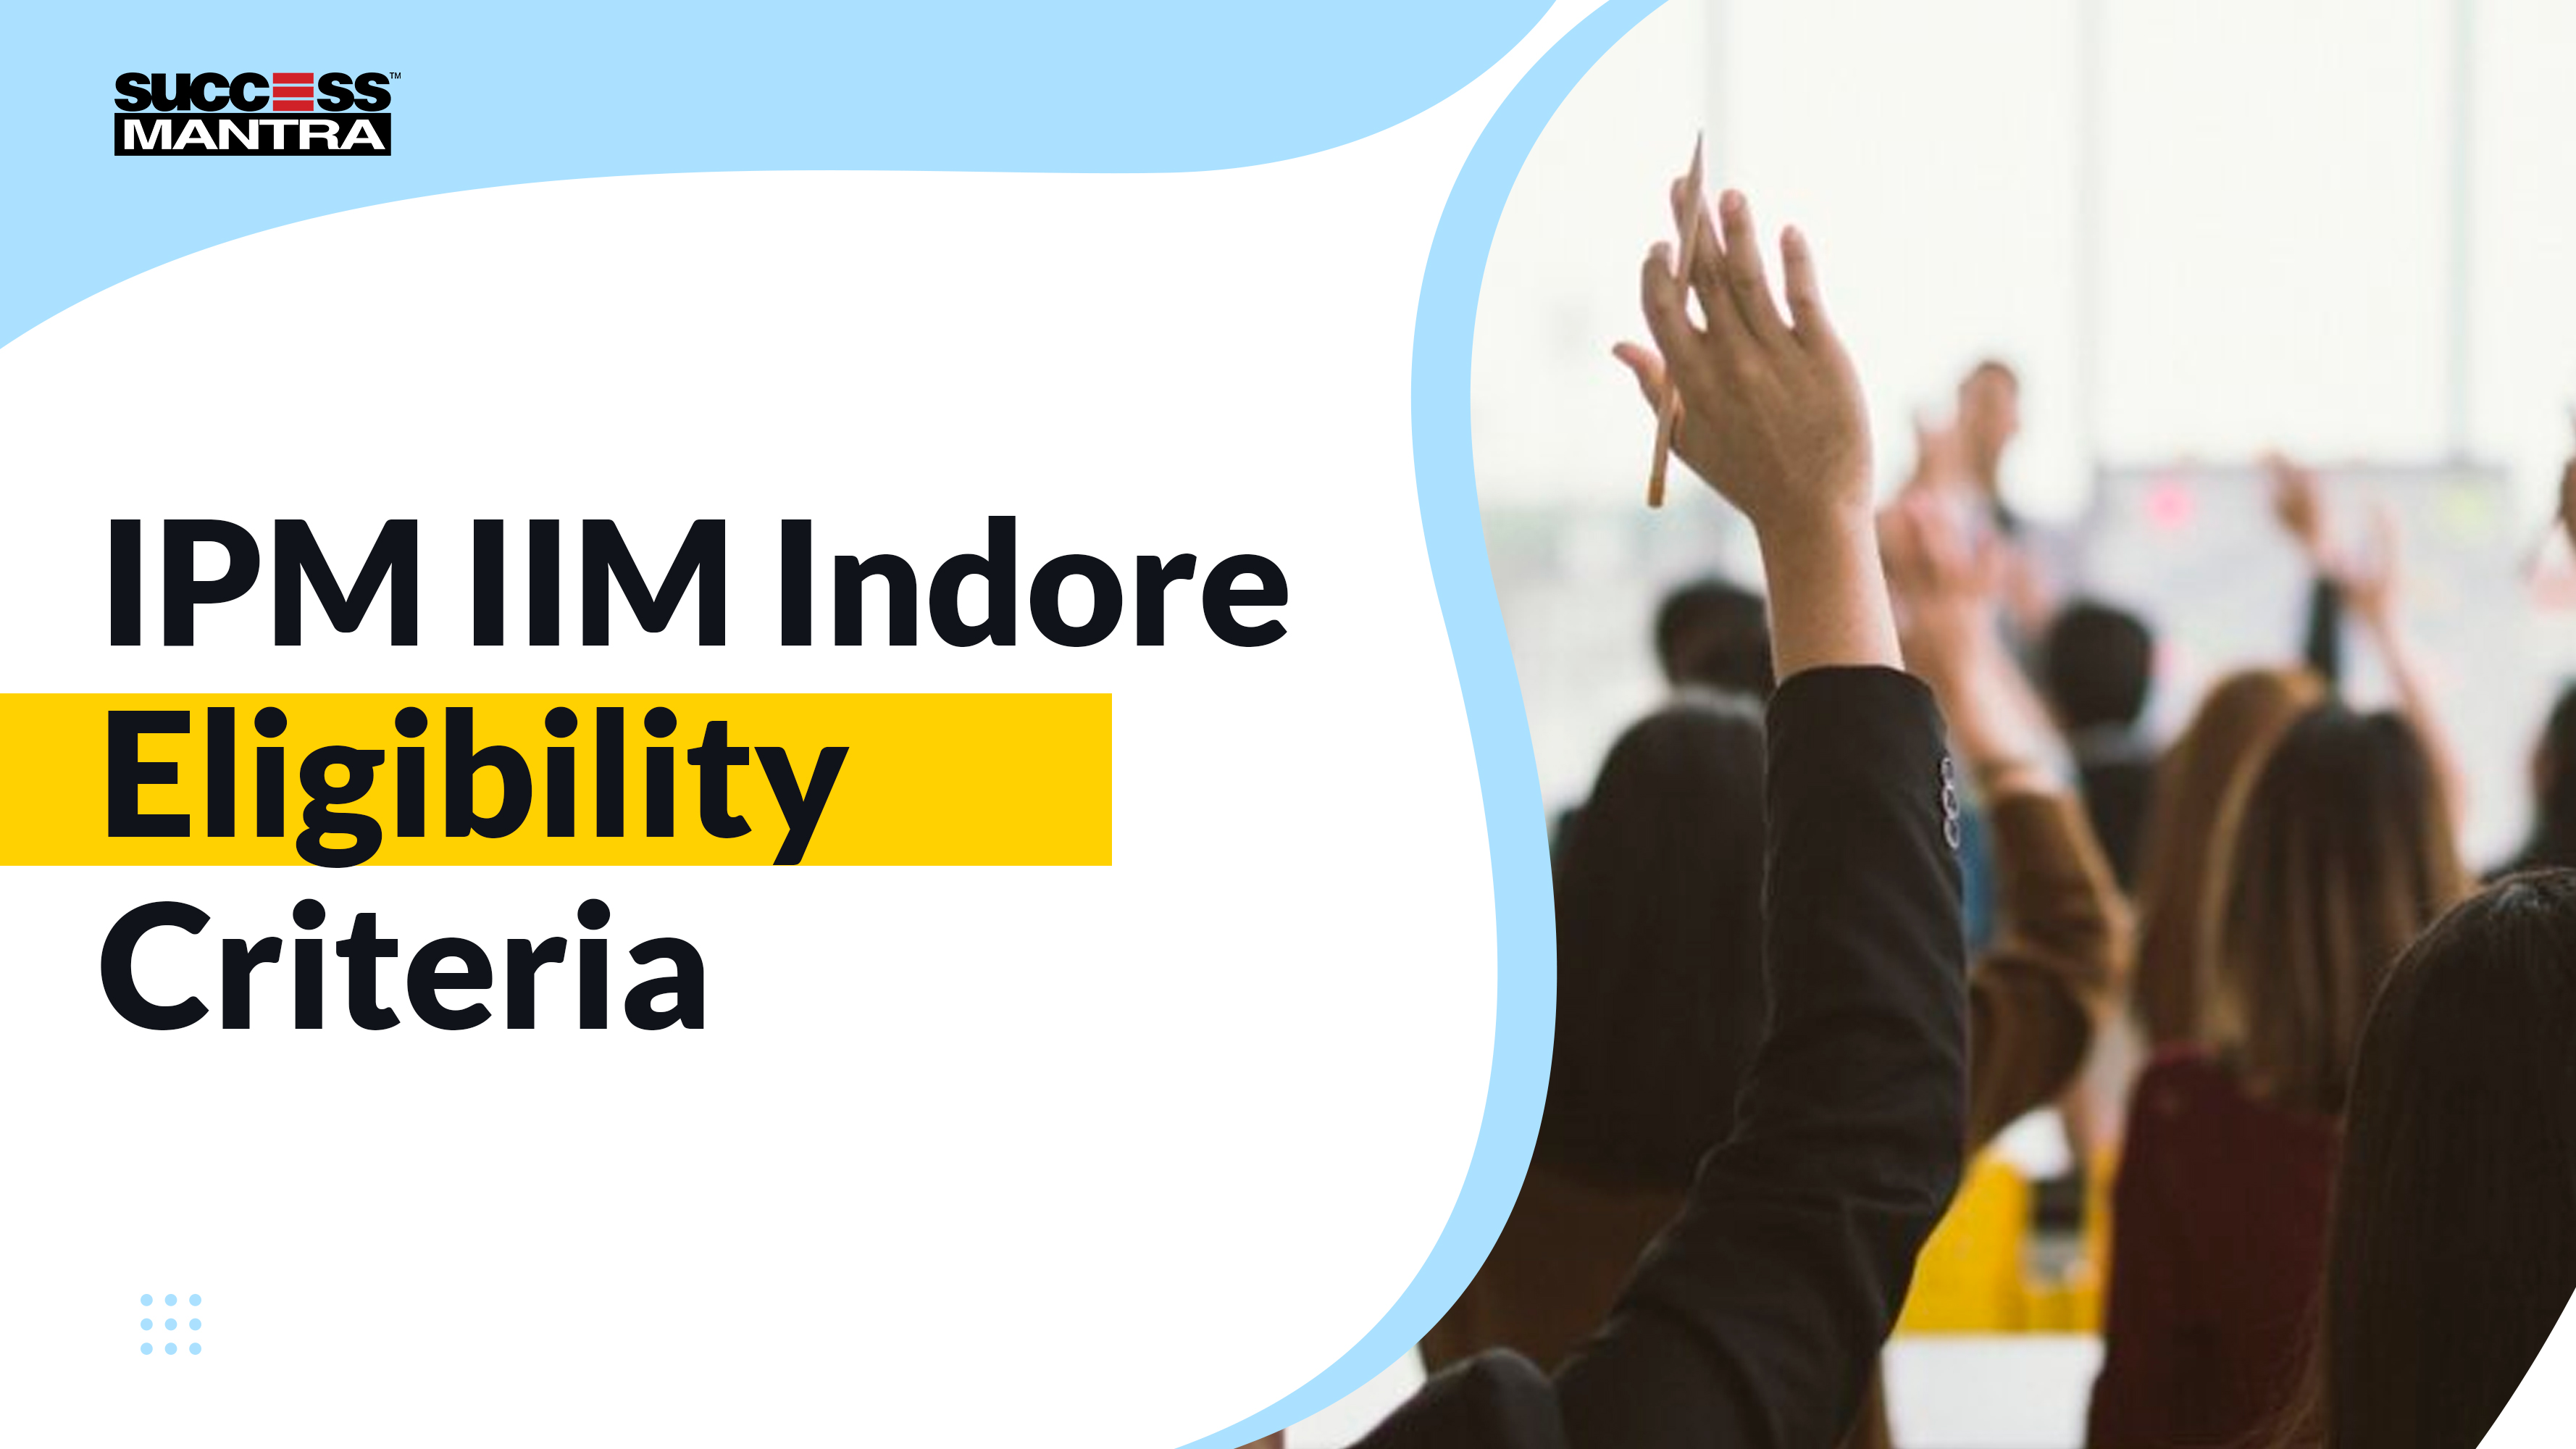 IPM IIM Indore Eligibility Criteria